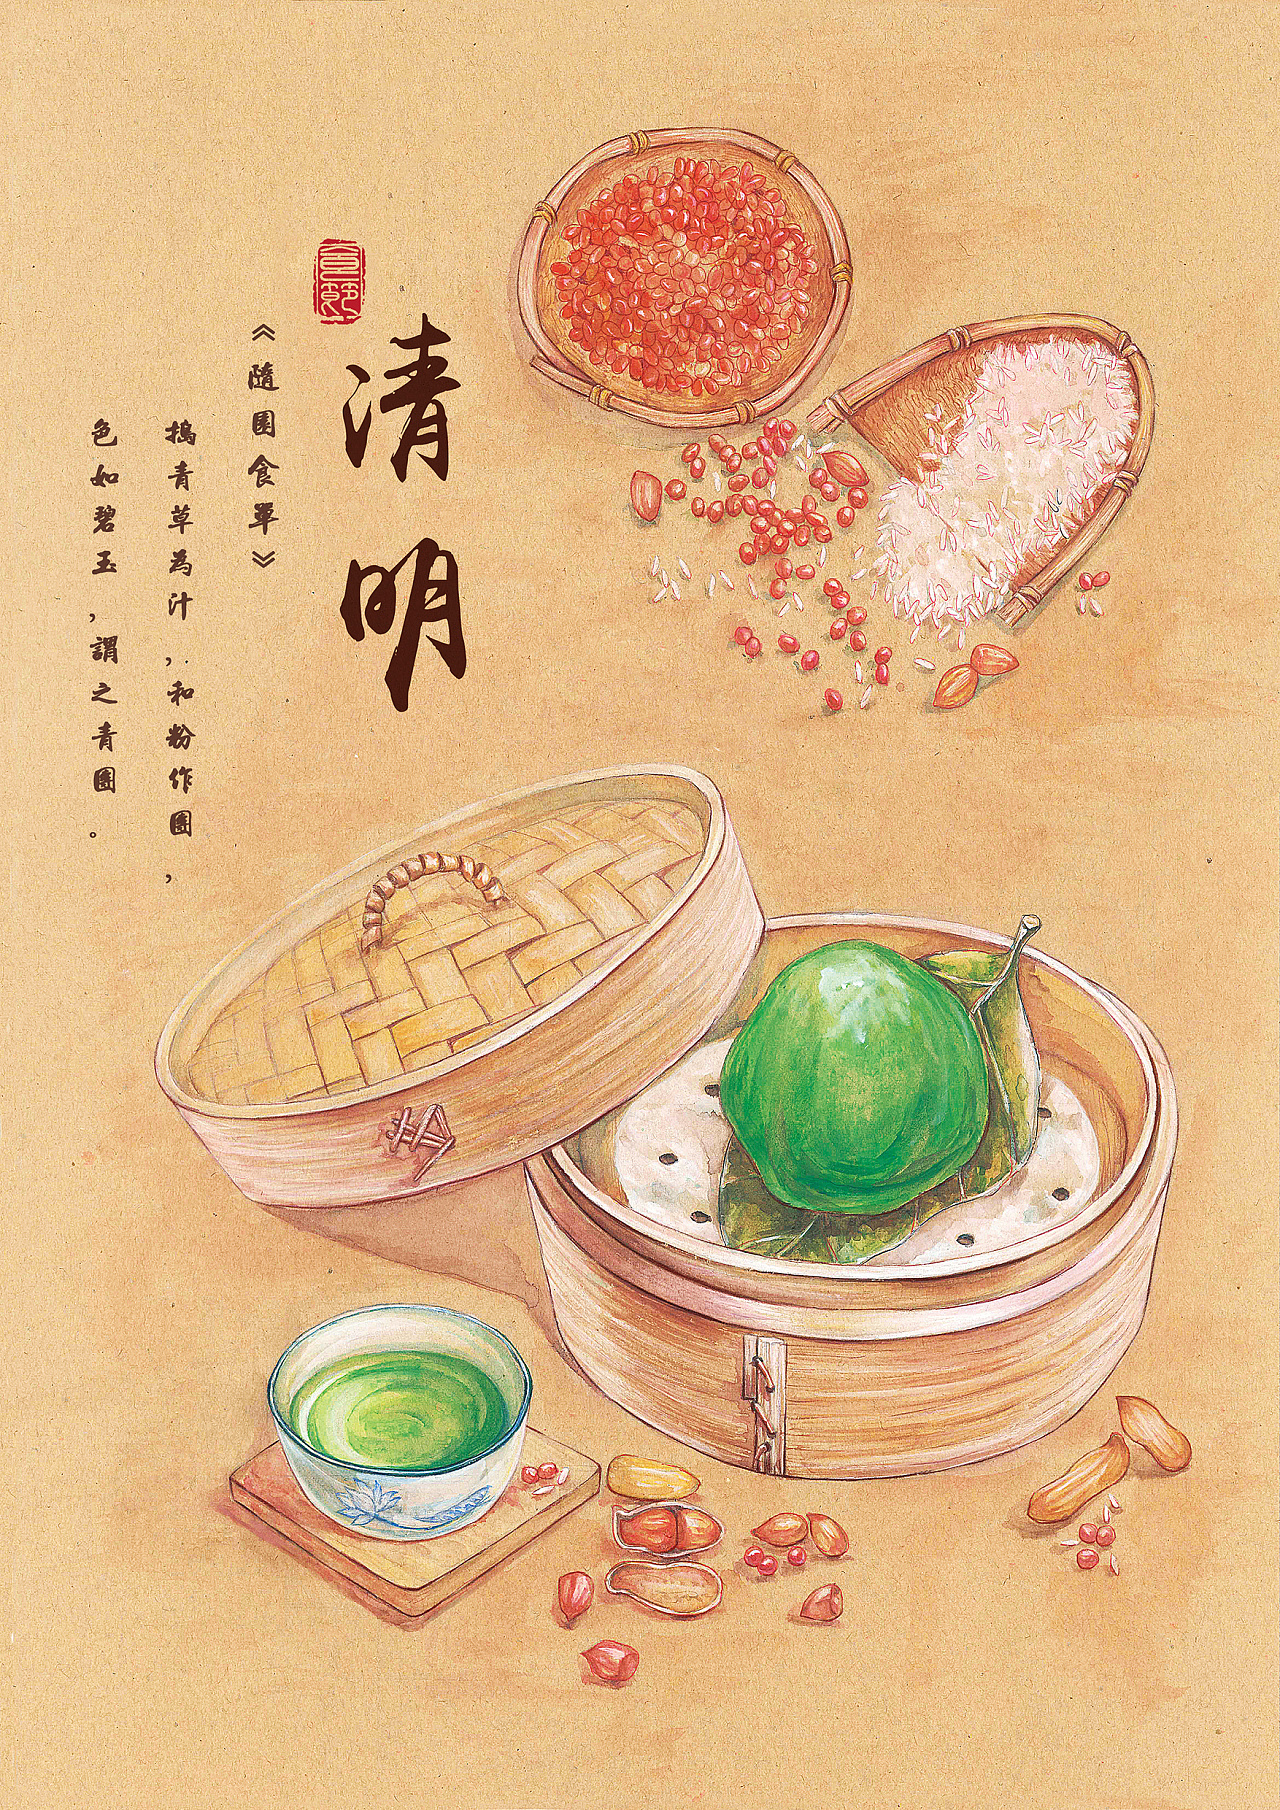 传统节日食俗系列插画